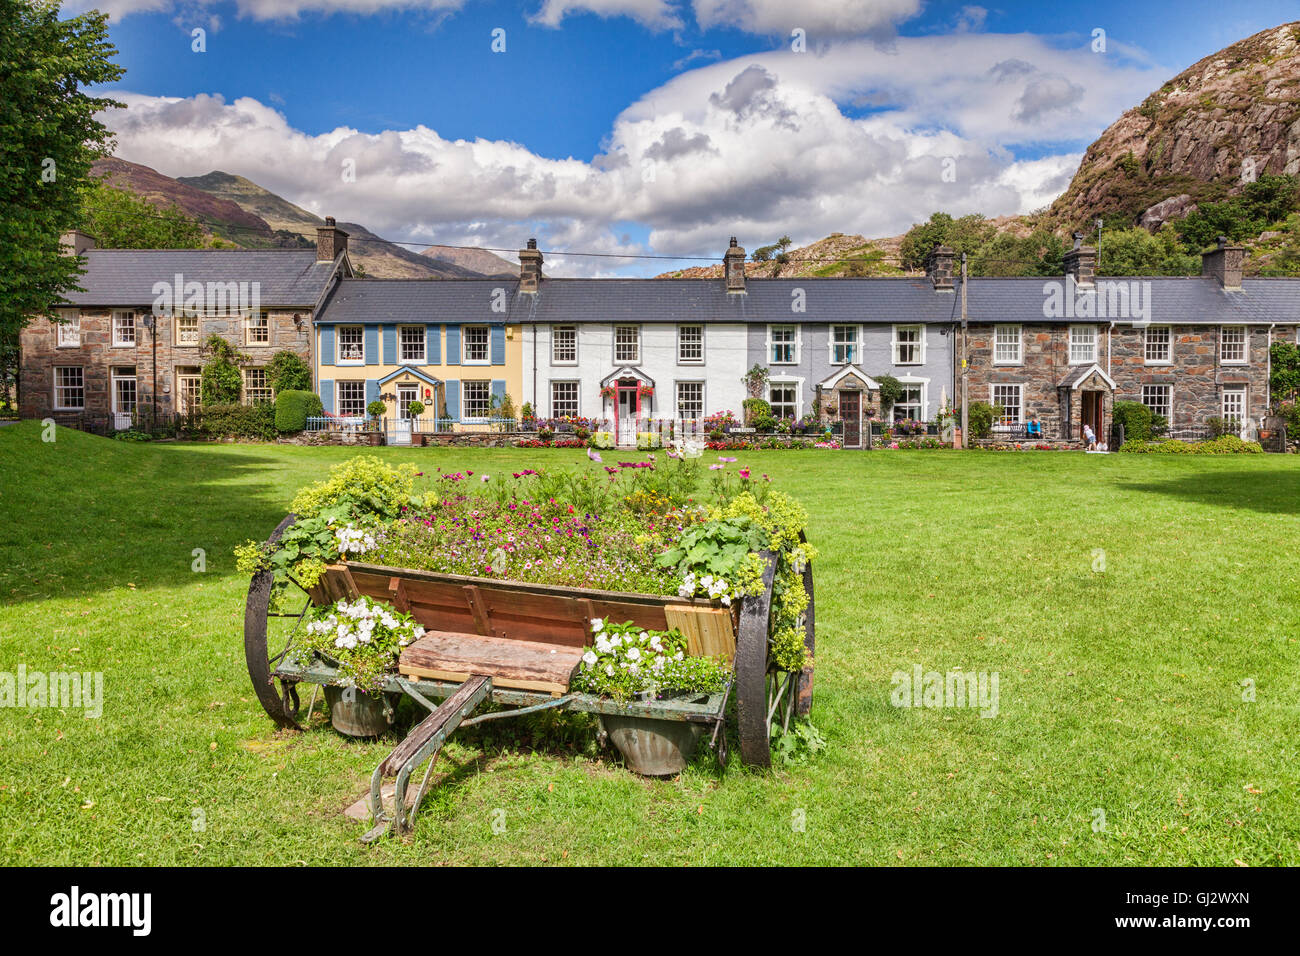 Una fila de casas rurales en un pueblo verde, Beddgelert, el Parque Nacional de Snowdonia, Gwynedd, Gales, Reino Unido Foto de stock